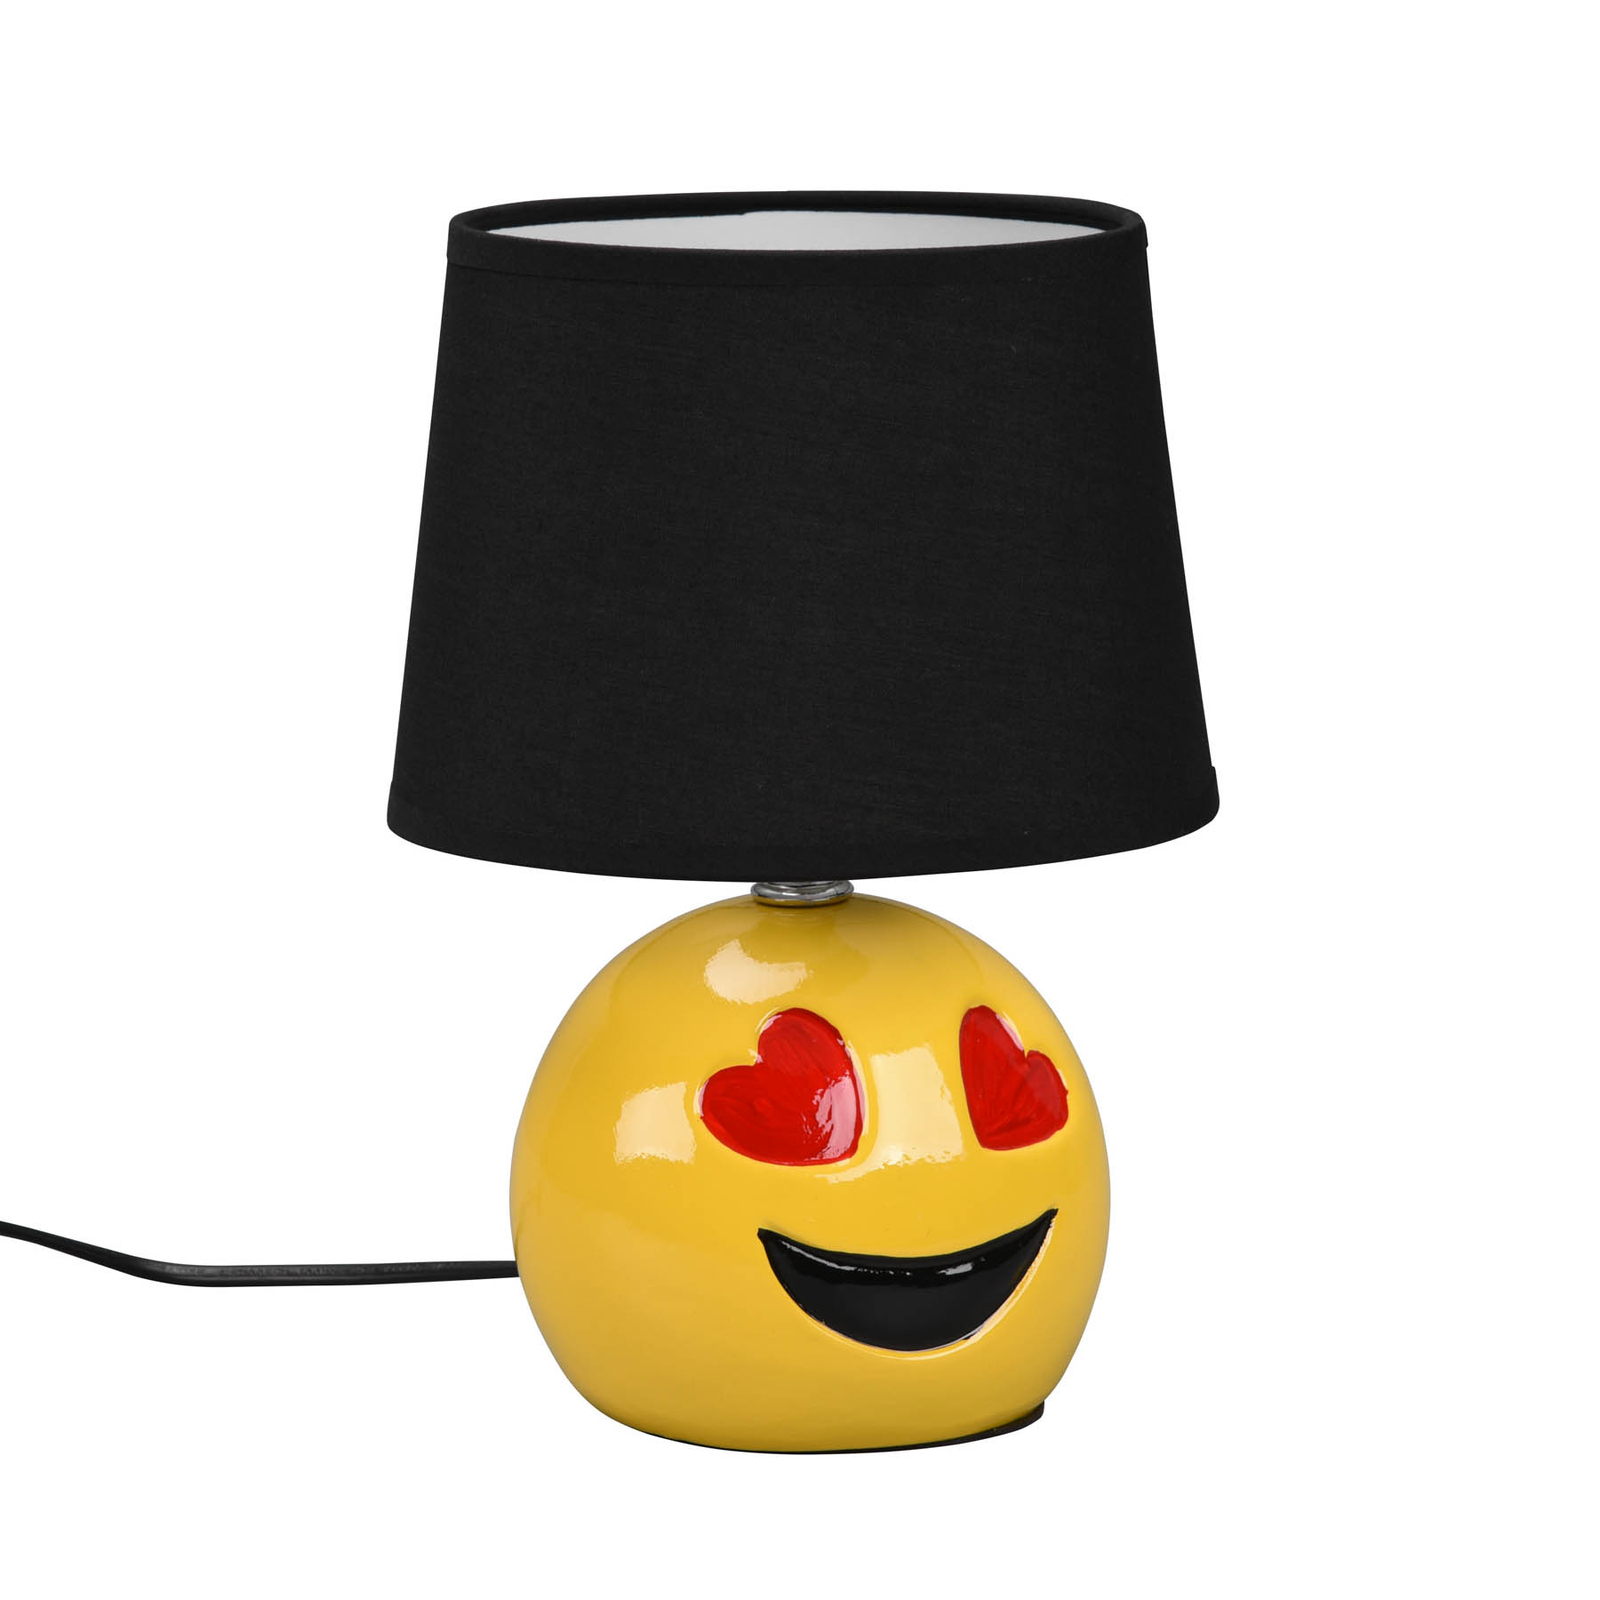 Bordlampe Lovely med smiley, stoffskjerm svart